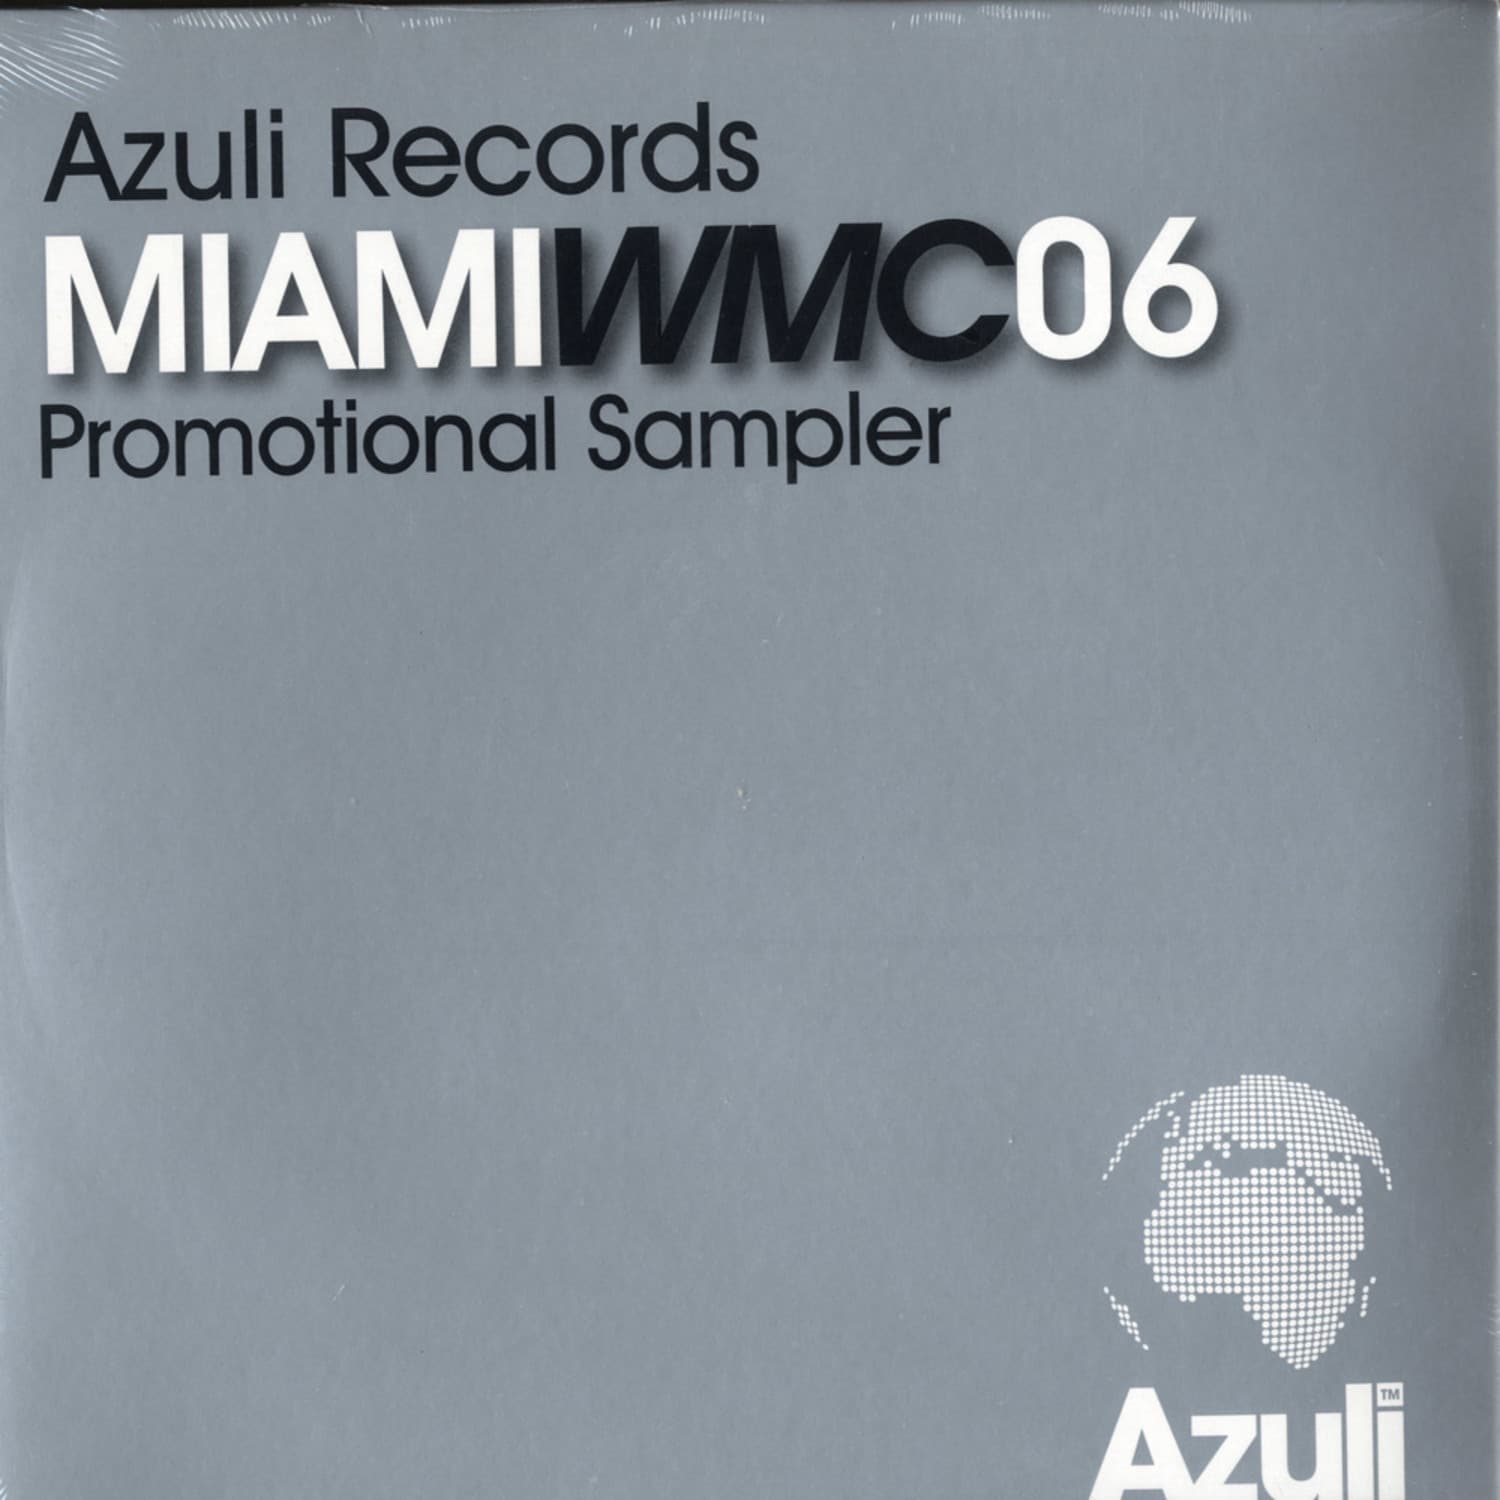 Various Artists - MIAMI WMC 06 SAMPLER 